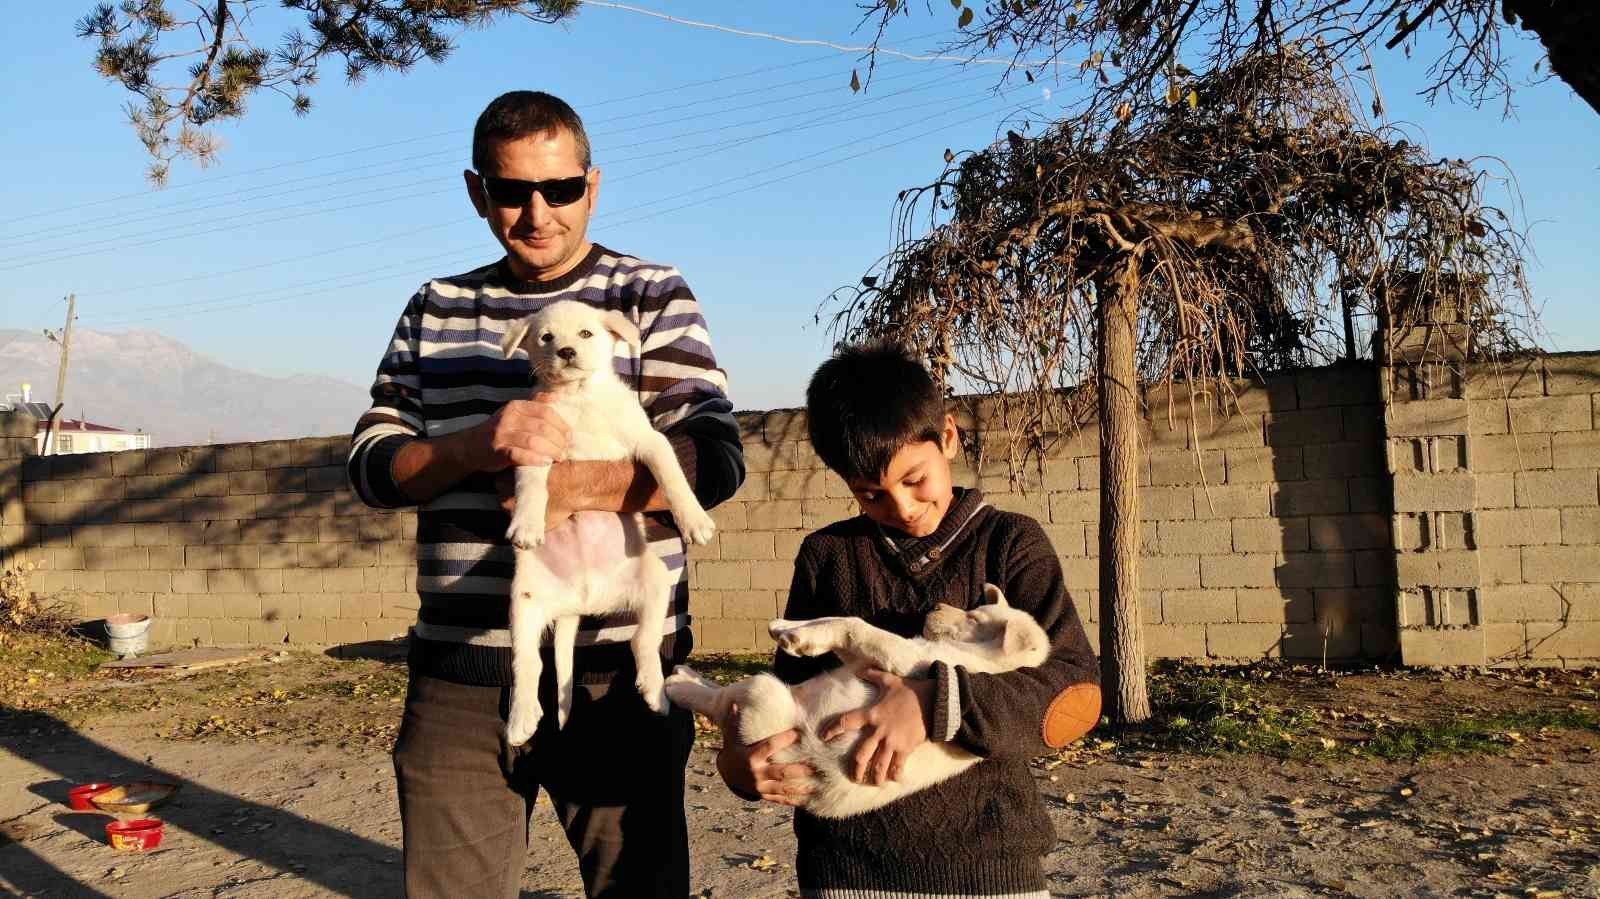 Ölmek üzereyken bir çocuk tarafından bulunan iki yavru köpek, Özdemir ailesinin neşe kaynağı oldu #erzincan